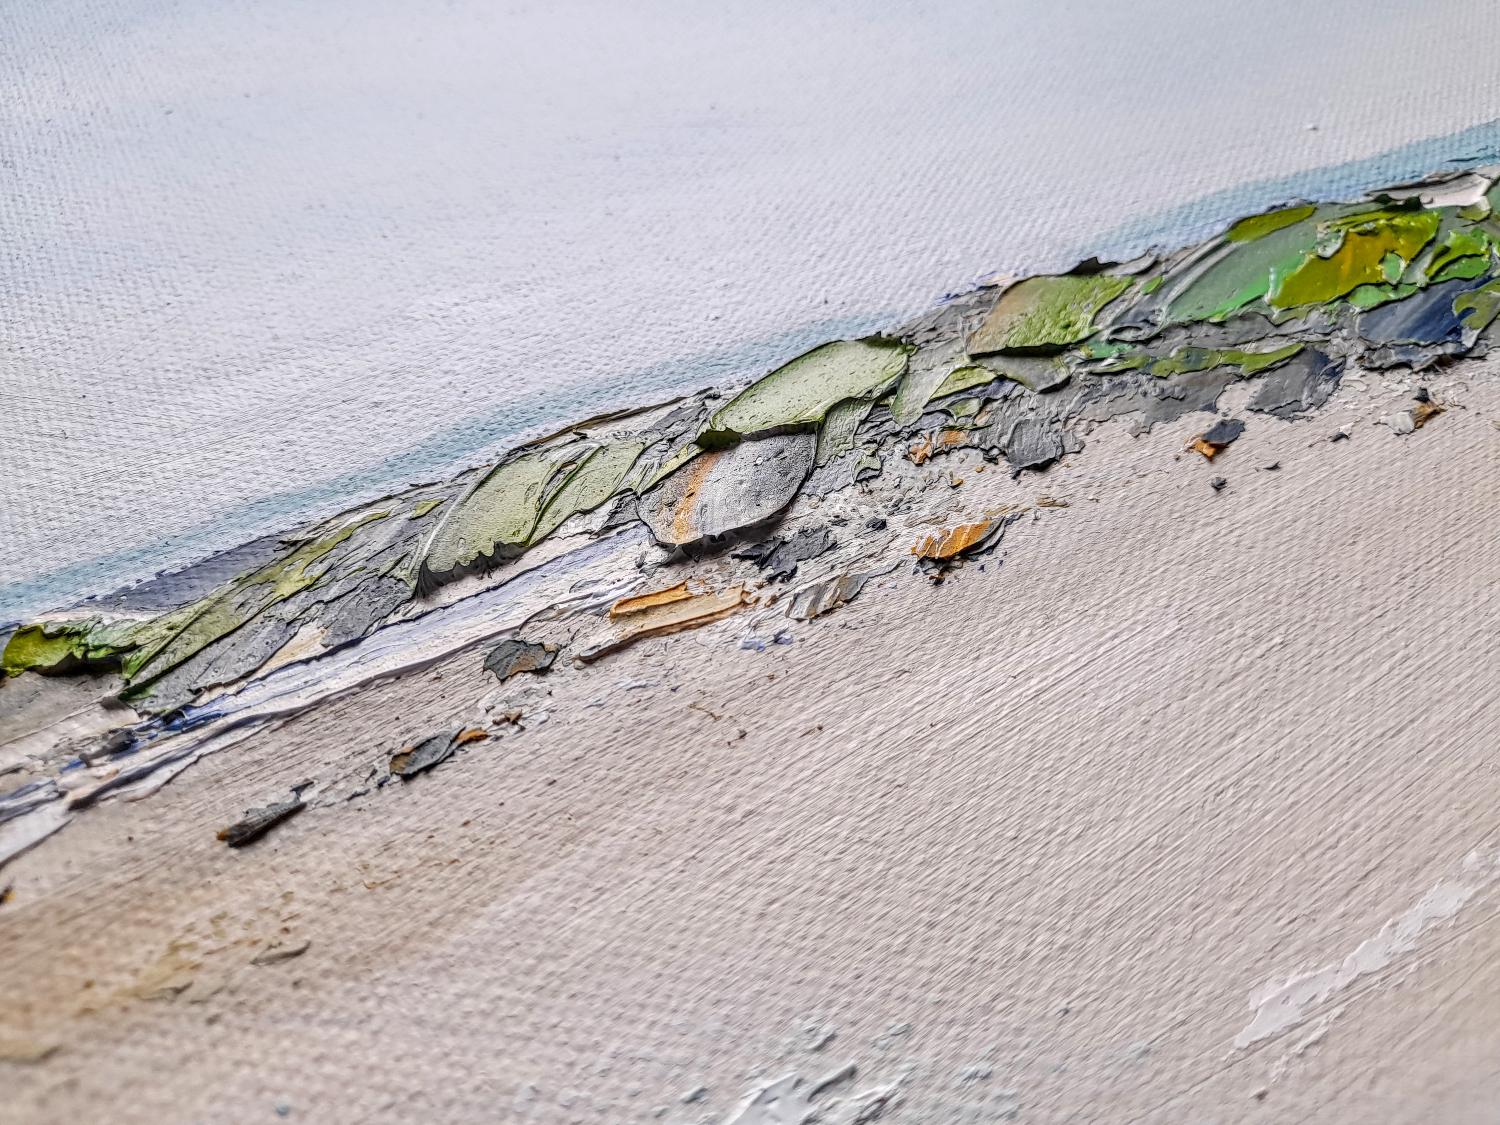 Ein Original-Ölgemälde auf Leinwand, das einen schönen Tag in der Rhossili Bay auf der Halbinsel Gower zeigt. Der Blick auf den langen Strand vermittelt ein Gefühl von Weite, während die Farbpalette einen frischen, sonnigen Tag vermittelt. Die